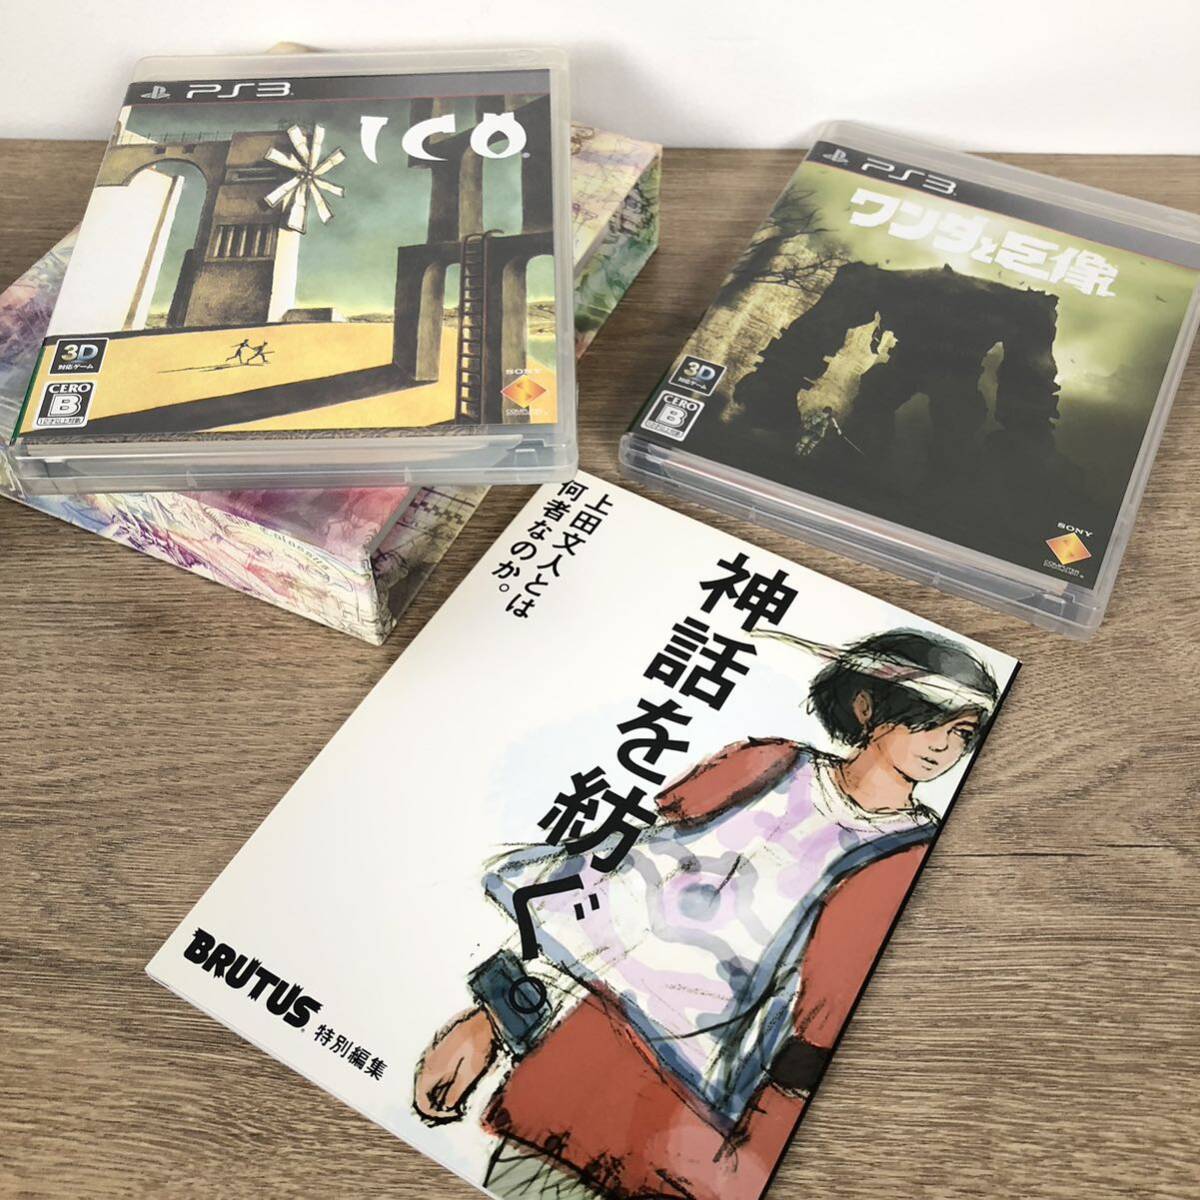 【PS3】ICO ワンダと巨像 リミテッドボックス Limited Box_画像4